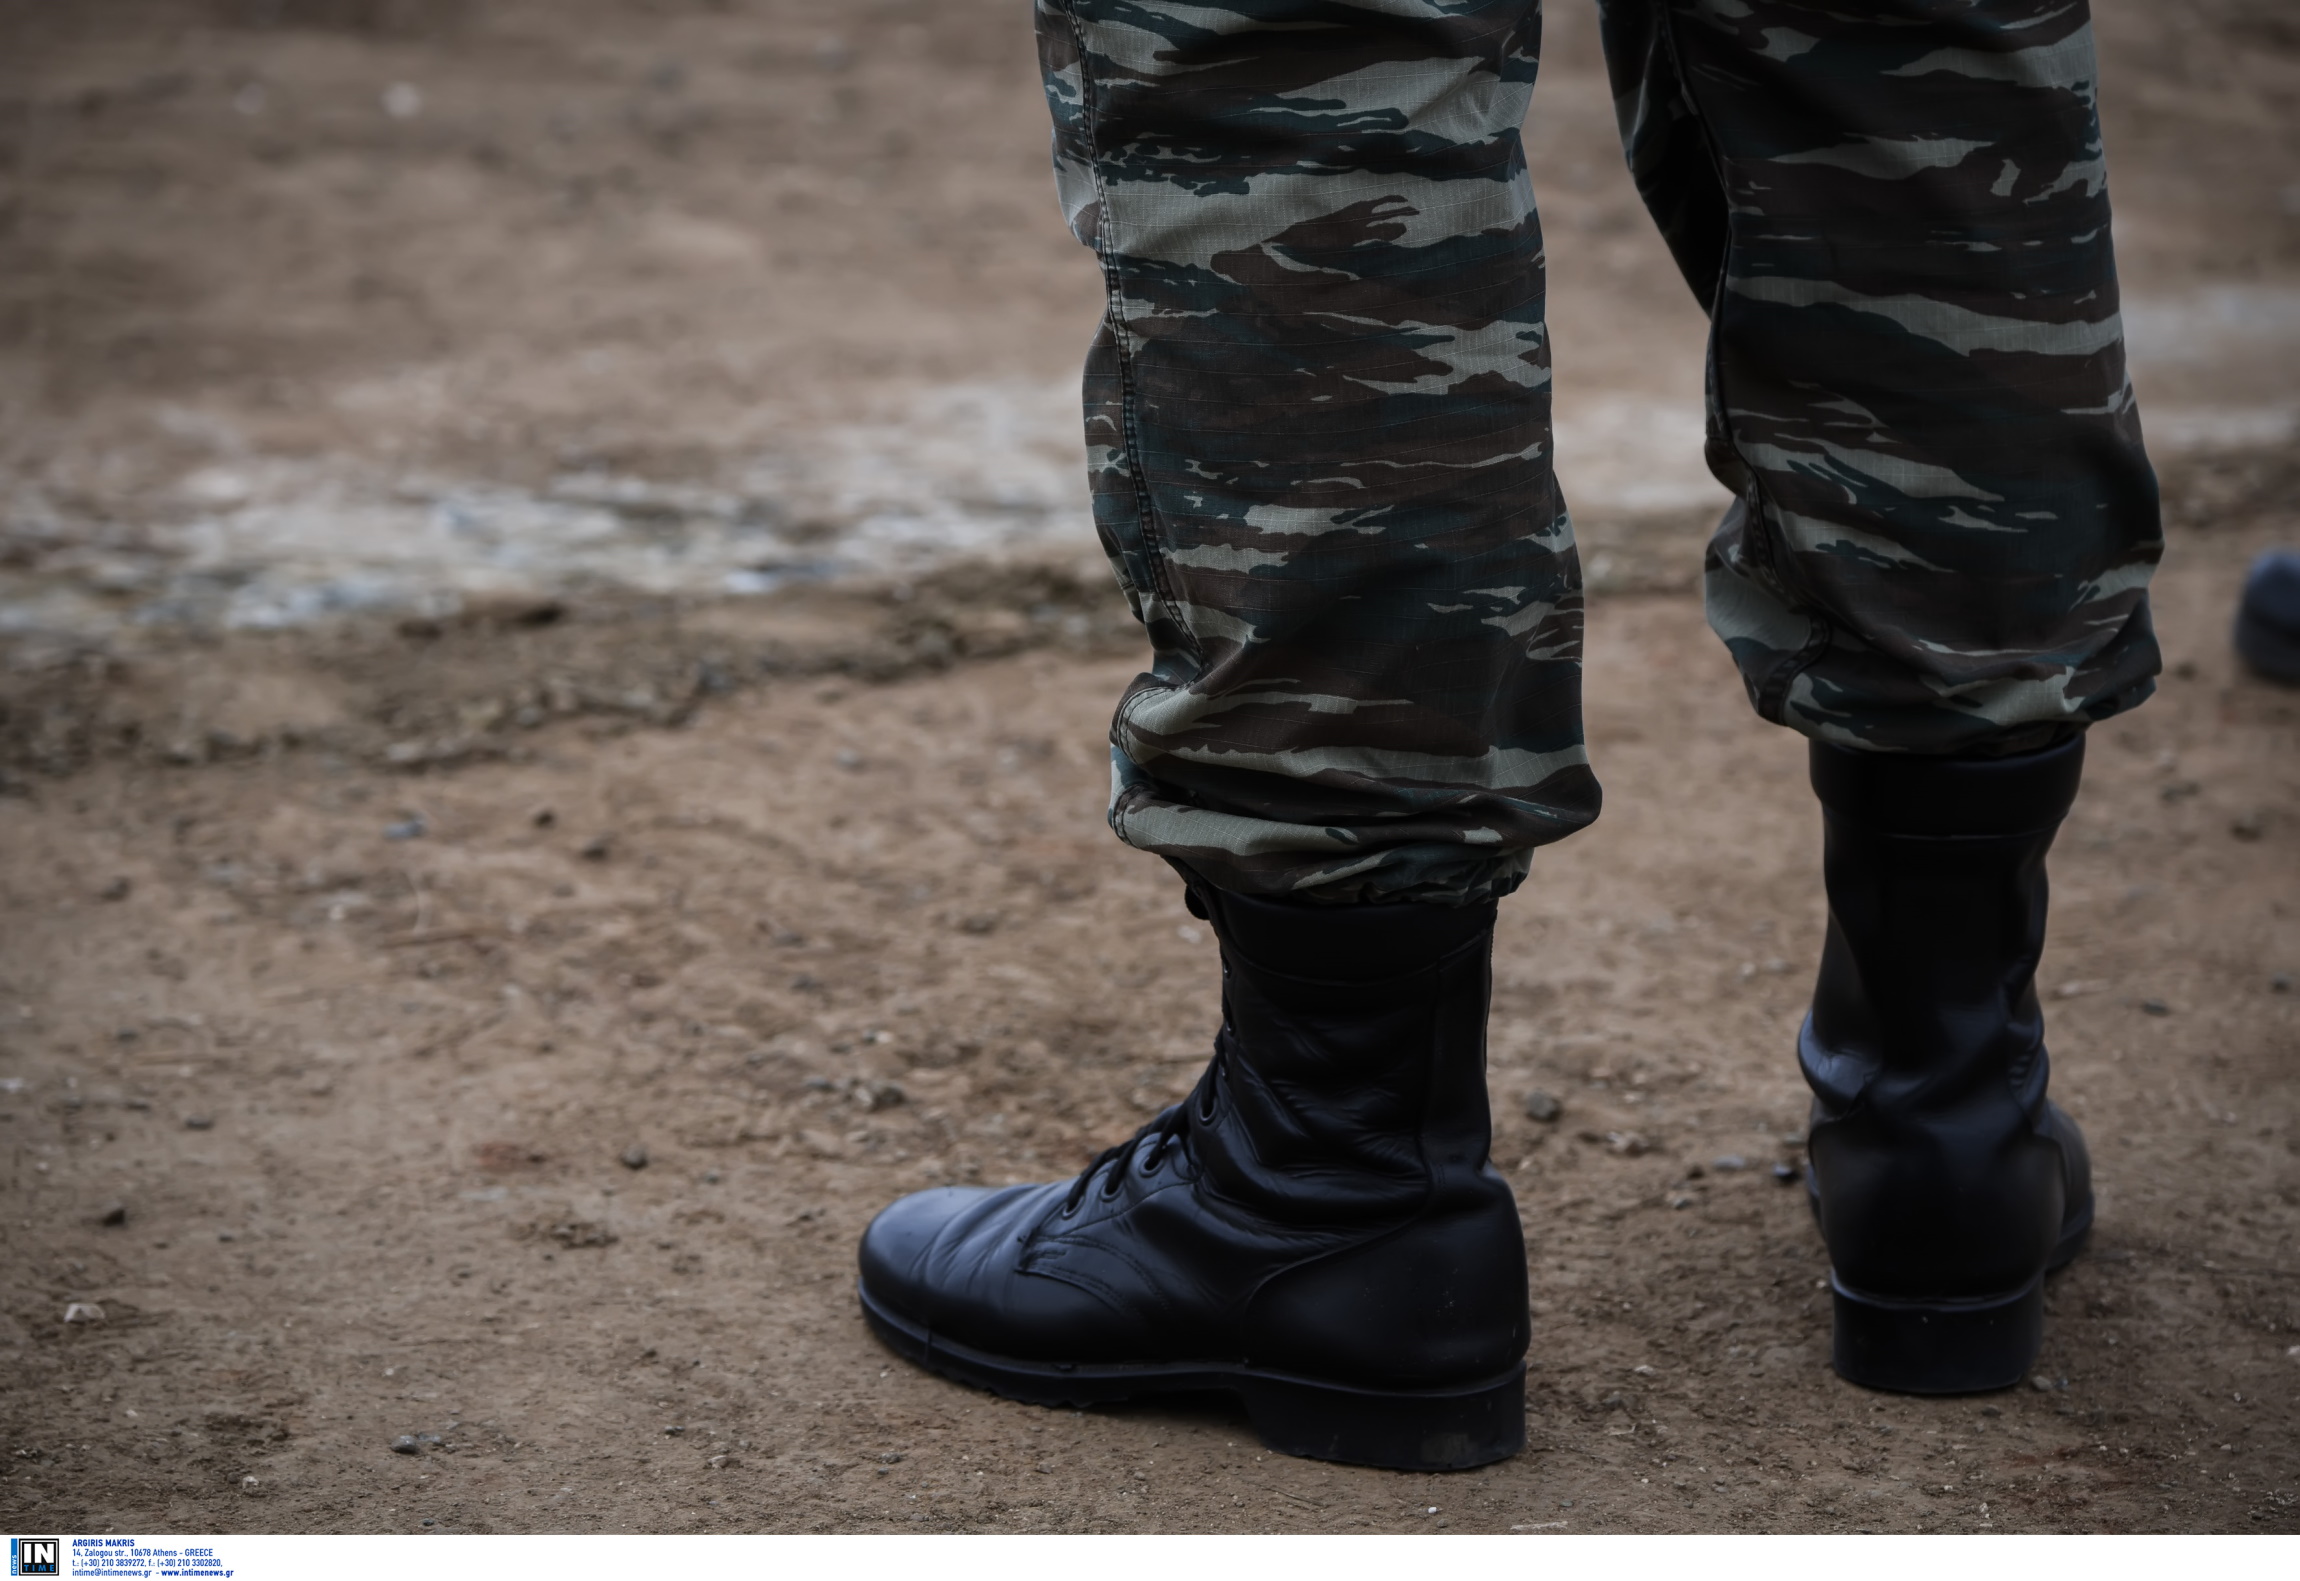 Ορεστιάδα: 19χρονος με νοητική υστέρηση κατήγγειλε τον βιασμό του από 46χρονο επιλοχία του Στρατού Ξηράς